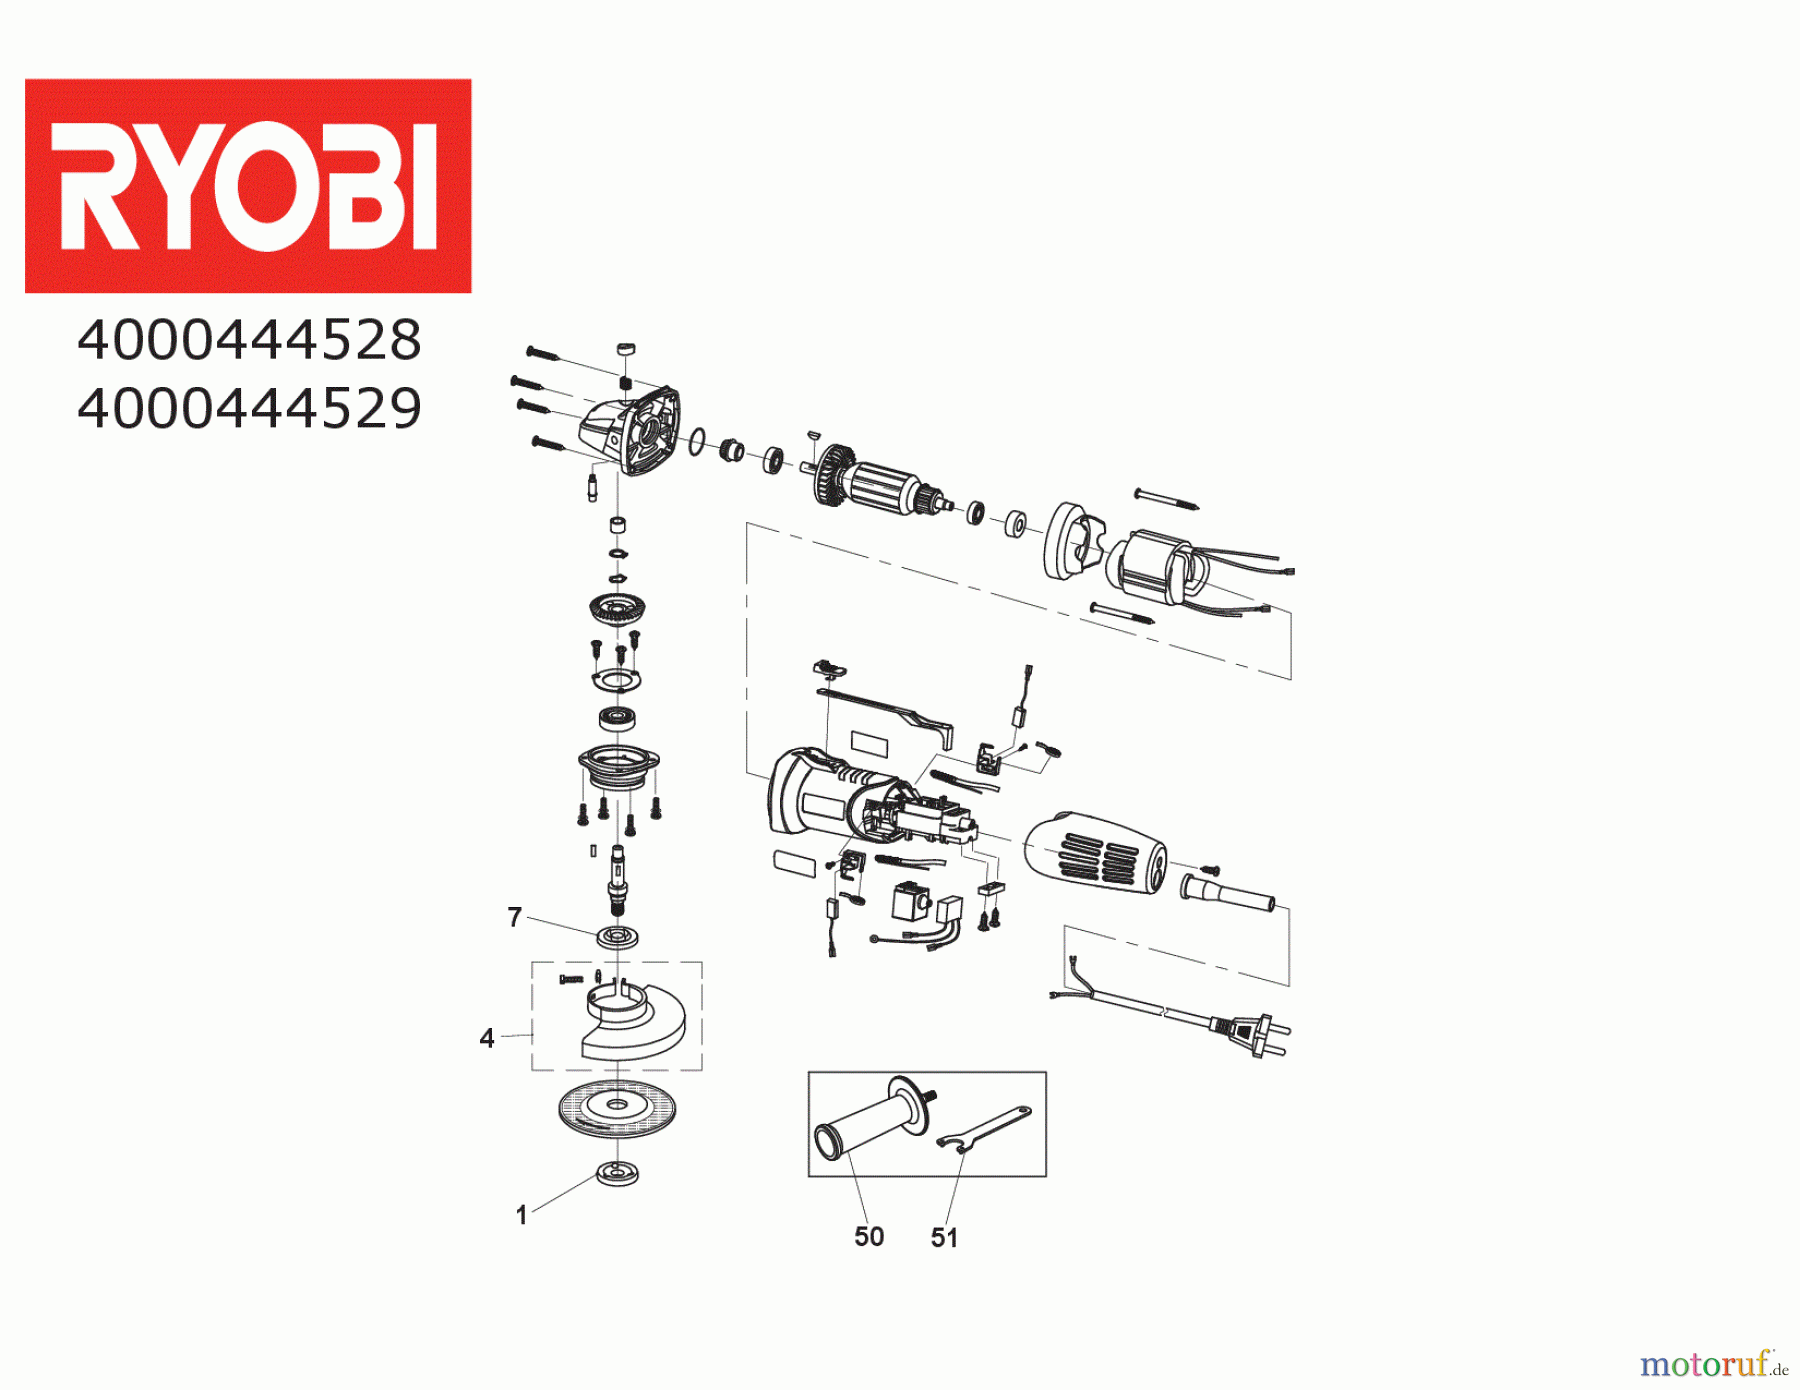  Ryobi Schleifgeräte Winkelschleifgerät RAG600